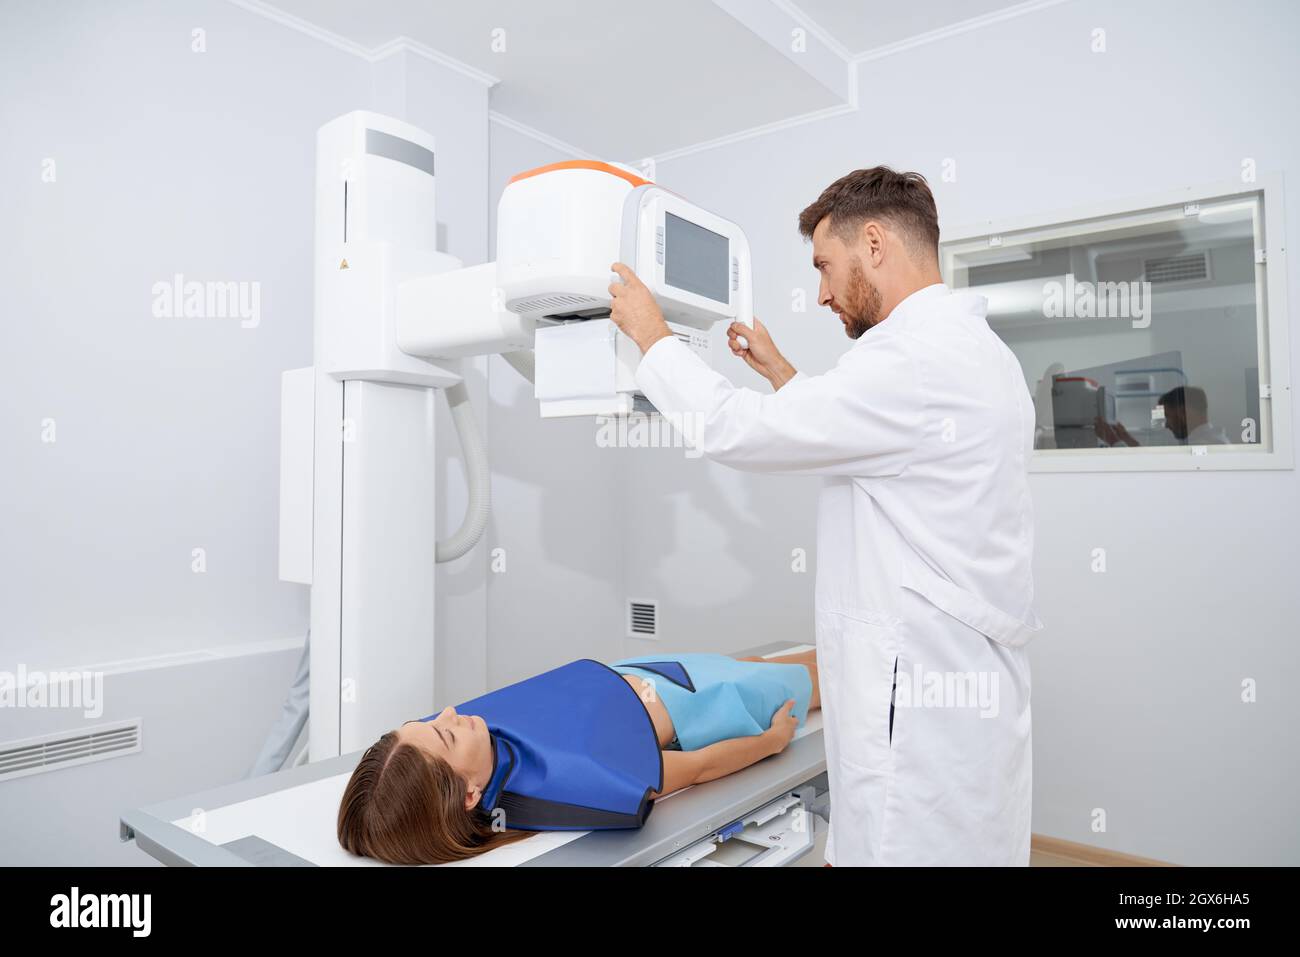 Joven radiólogo profesional que utiliza una herramienta moderna de ultrasonido para mujeres con un manto azul seguro. Acuéstese bastante, escaneando el estómago en el procedimiento de ultrasonido. Concepto de medicina. Foto de stock